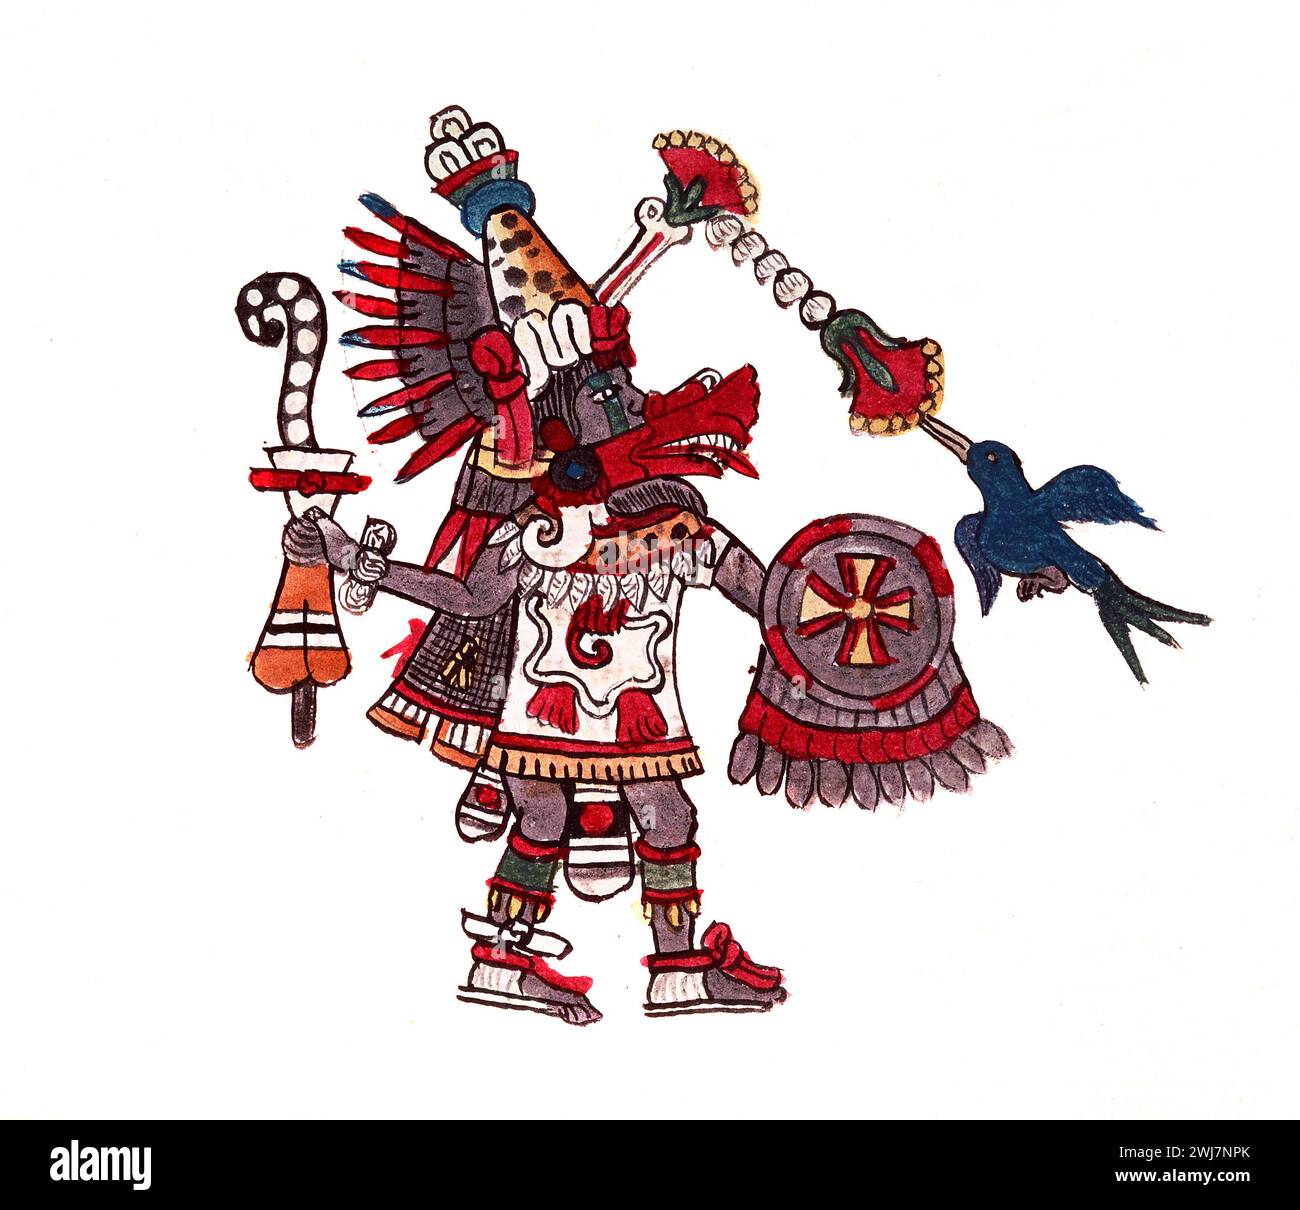 Quetzalcoatl, eine Gottheit der aztekischen Kultur und Literatur. Illustration aus dem Codex Magliabechiano (16. Jahrhundert). Stockfoto